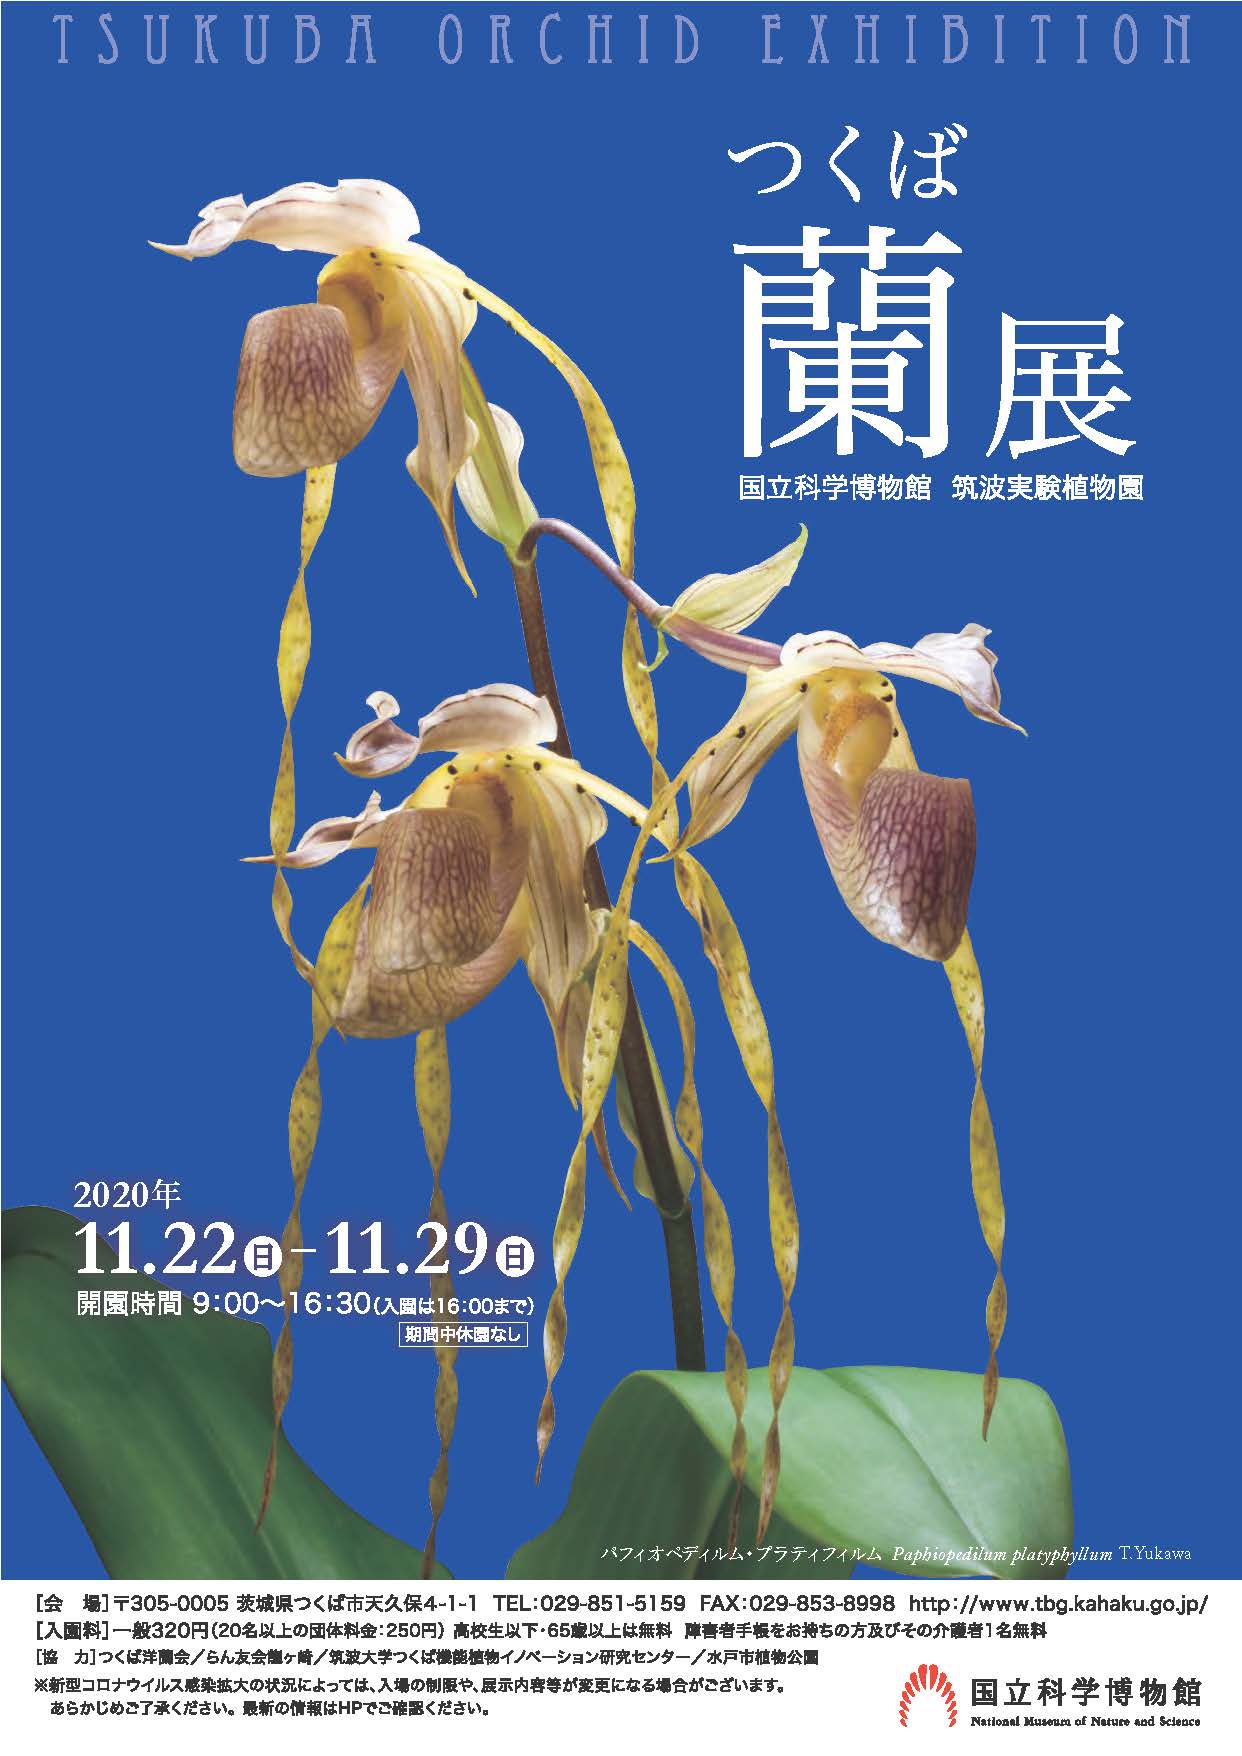 国立科学博物館 筑波実験植物園 つくばで世界の珍しいランが咲きます 約500種類の見ごろの花々を大公開 つくば蘭展 11 22 から開催 文化庁のプレスリリース